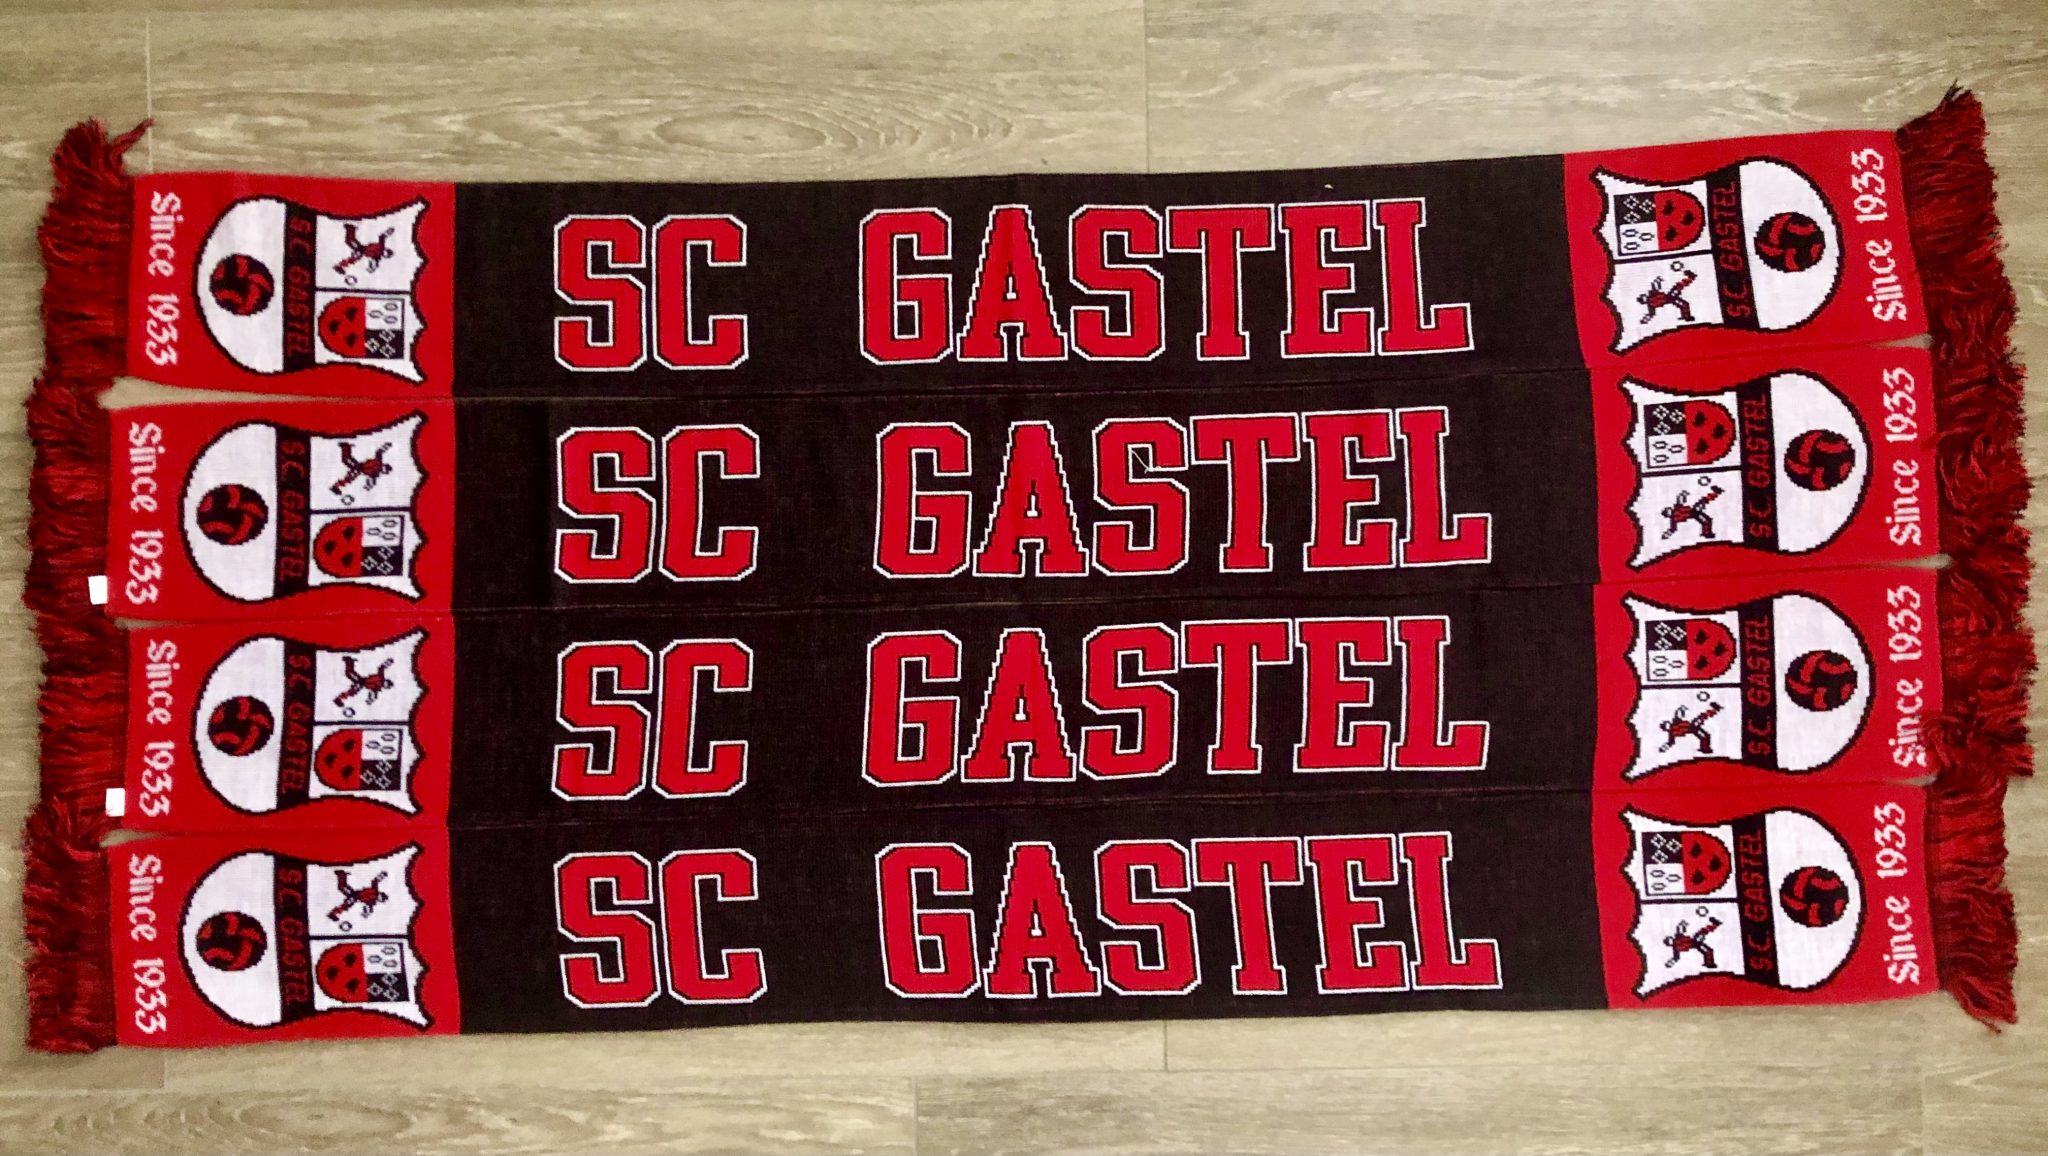 Ze zijn er weer, SC Gastel sjaals!